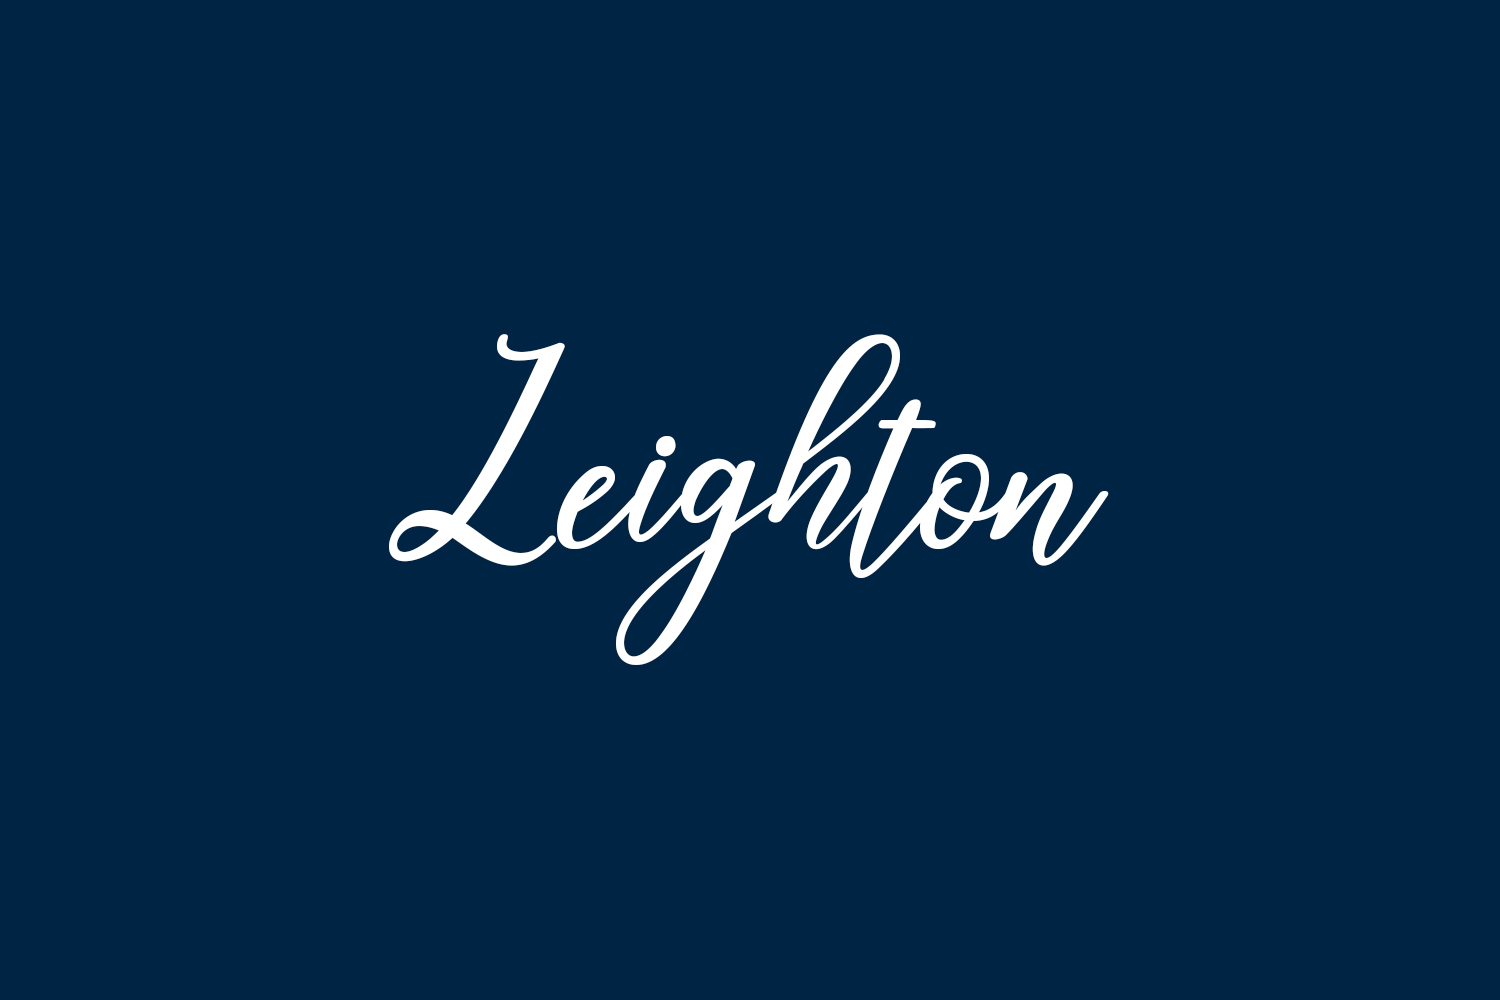 Leighton Free Font